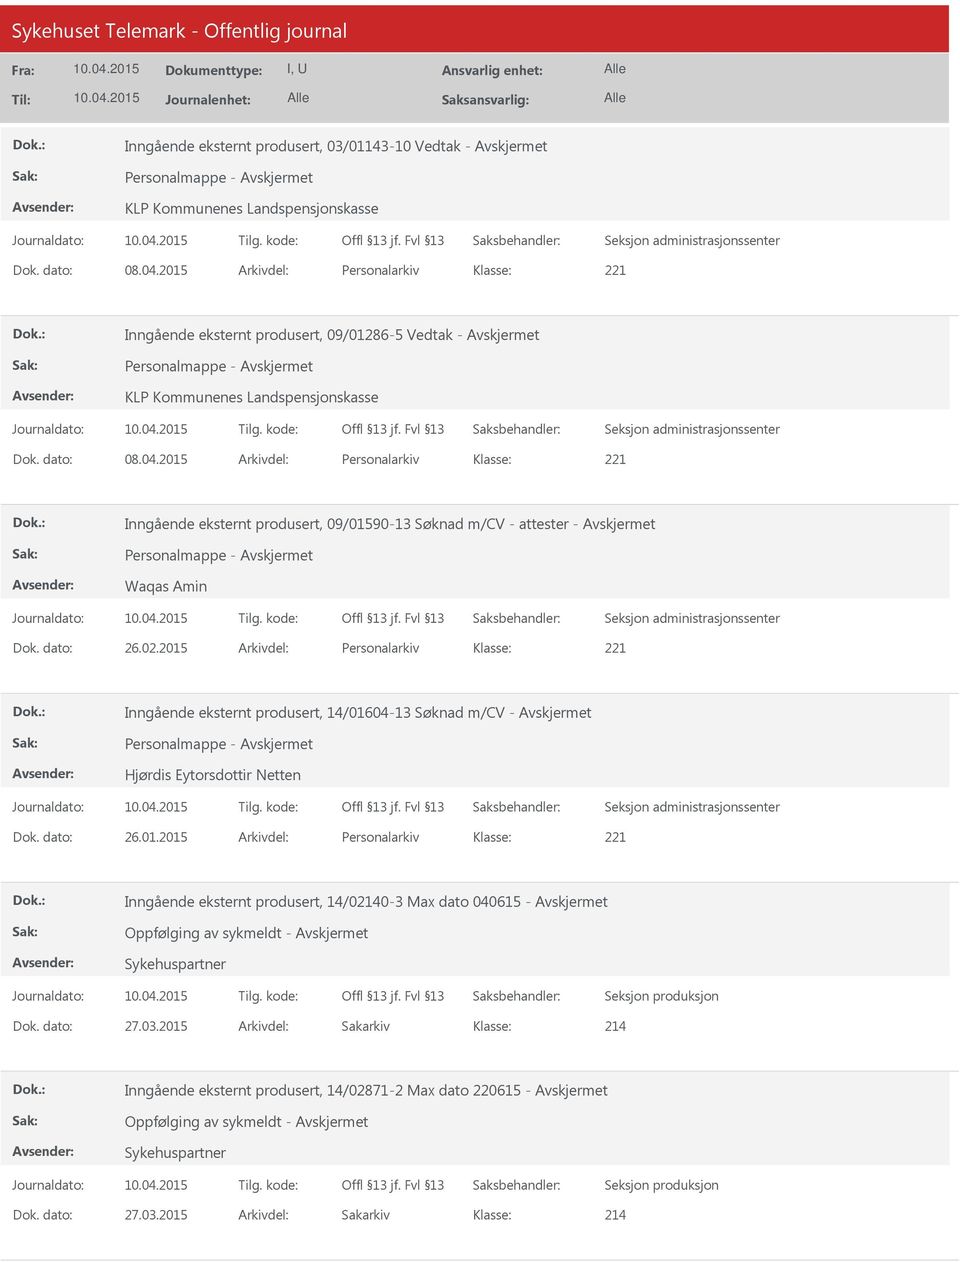 2015 Arkivdel: Personalarkiv Inngående eksternt produsert, 09/01590-13 Søknad m/cv - attester - Personalmappe - Waqas Amin Dok. dato: 26.02.